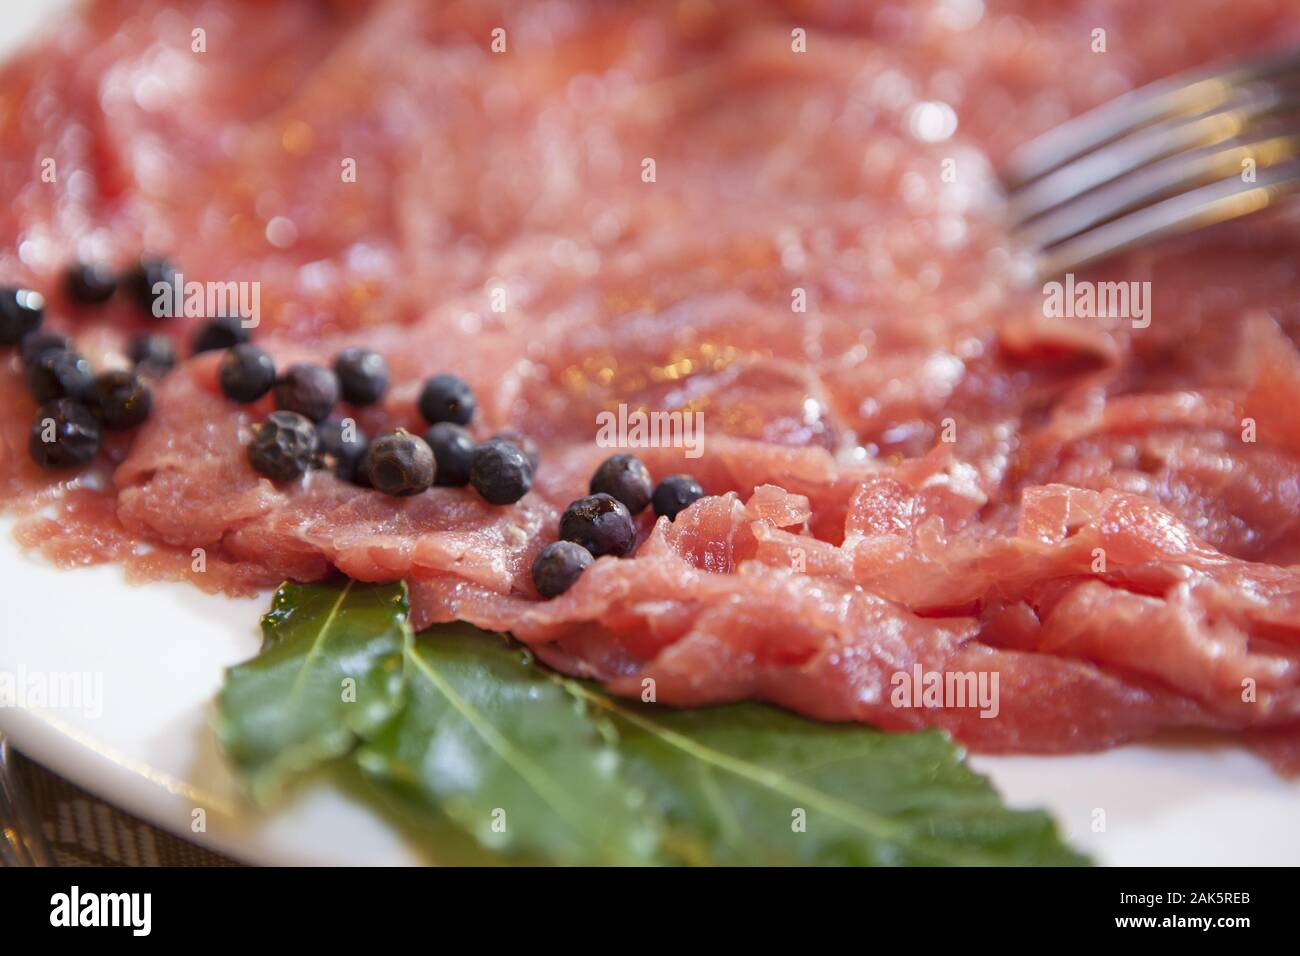 Obergarda: Carne salada, Spezialität der Gemeinden Arco, Dro, Varone und Riva del Garda, Oberital. Seen | usage worldwide Stock Photo